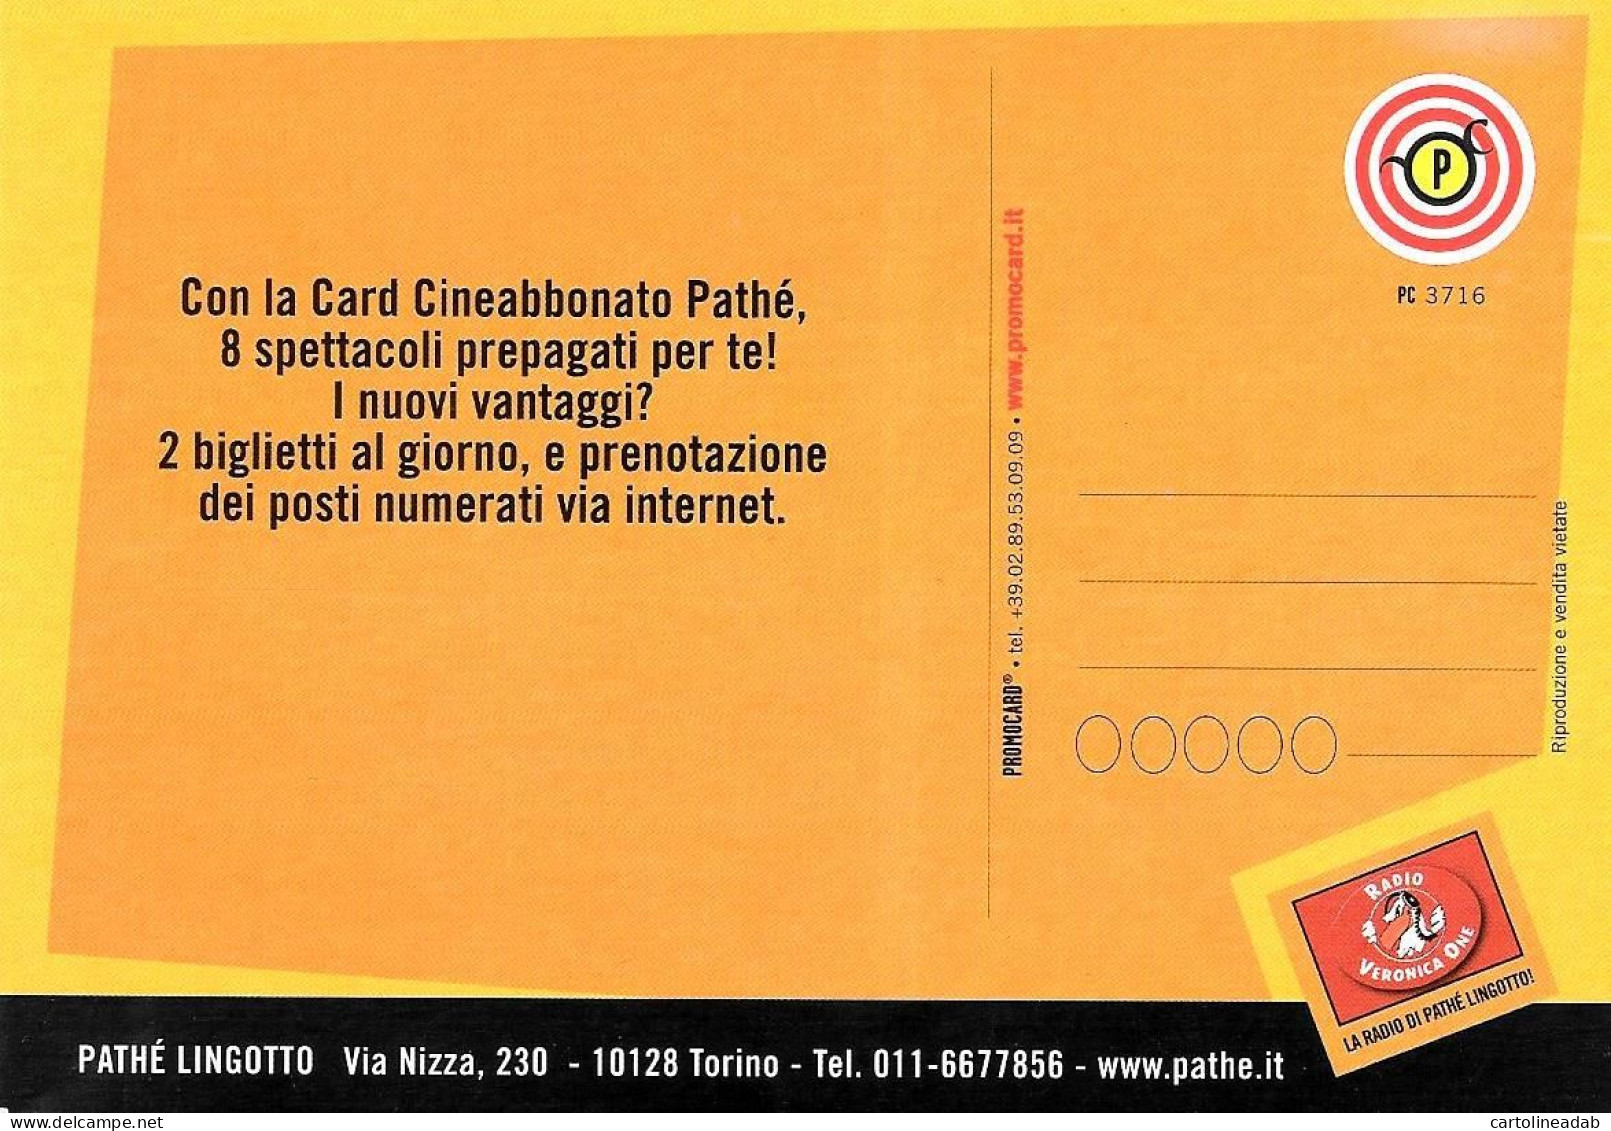 [MD9379] CPM - CINEMA PATHE' LINGOTTO TORINO - PROMOCARD 3716 - PERFETTA - Non Viaggiata - Publicité